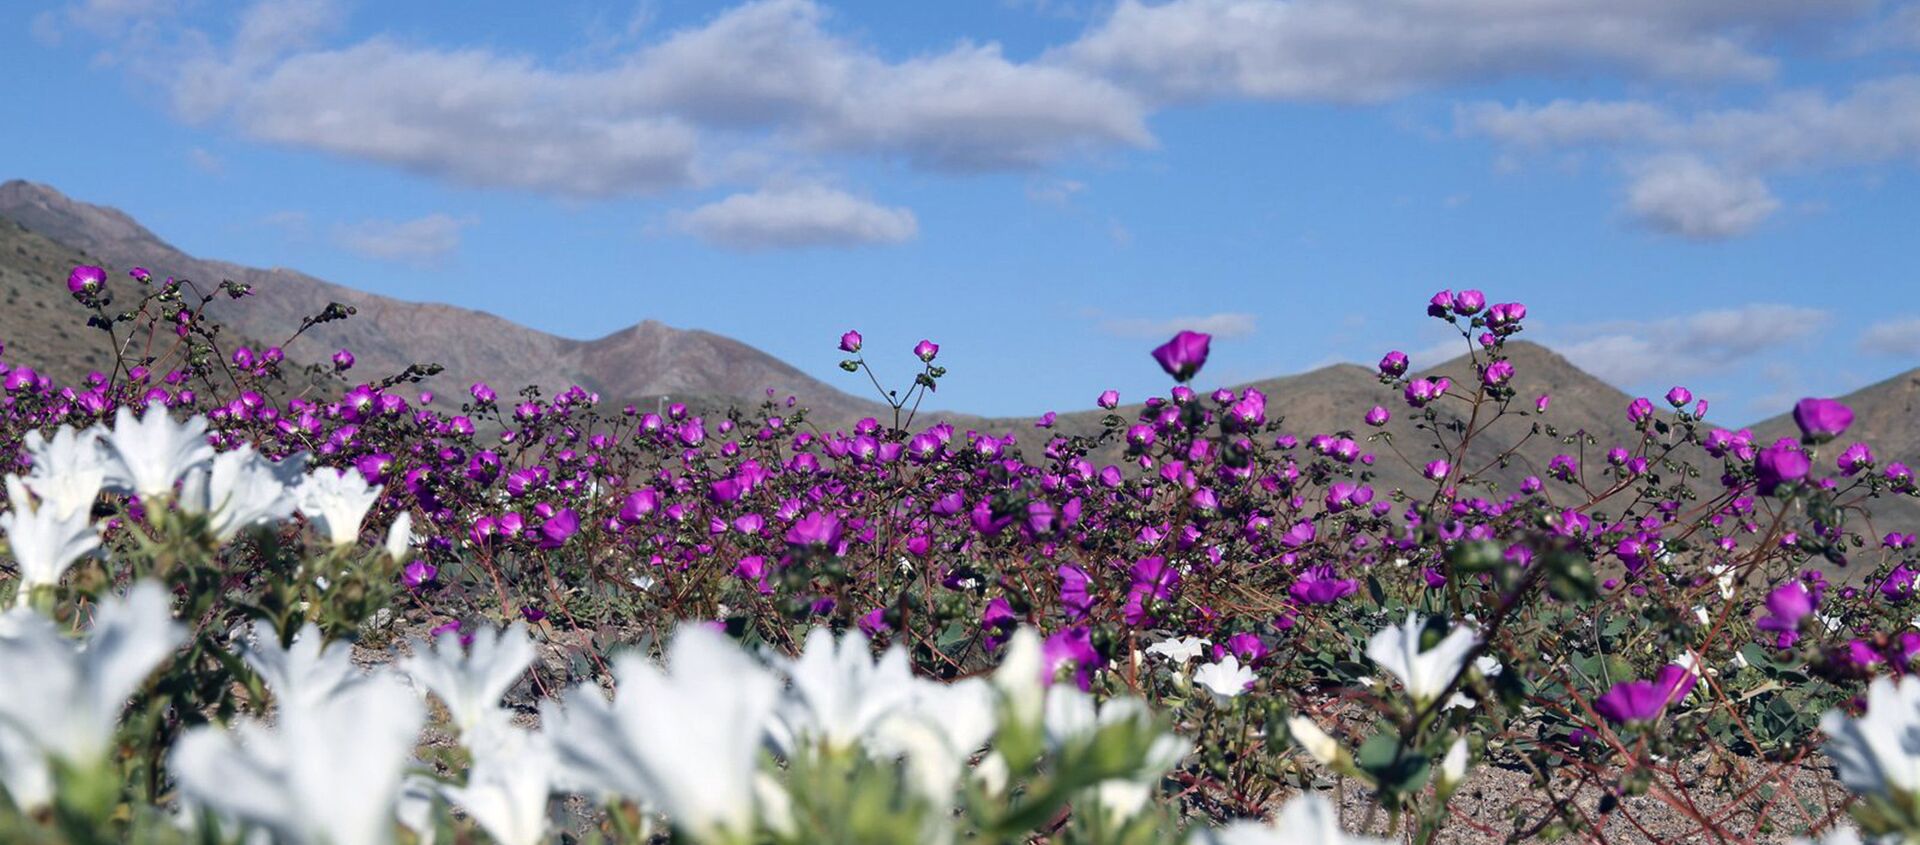 Flores en el desierto de Atacama como consecuencia de El Niño - Sputnik Mundo, 1920, 25.12.2015